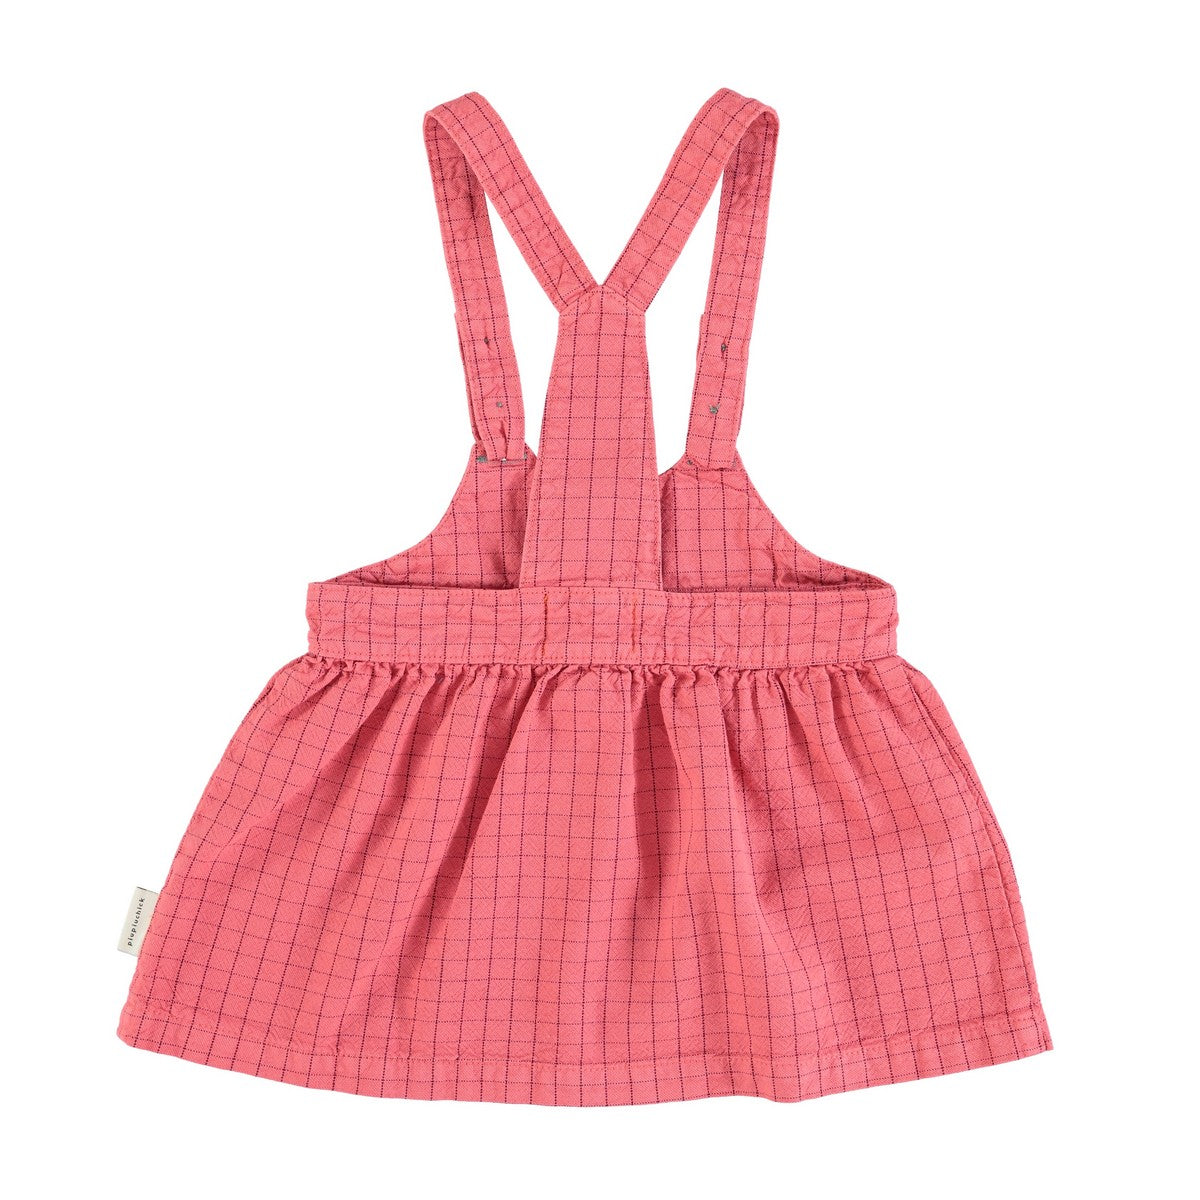 Piupiuchick Strawberry Checkered Suspender Skirt